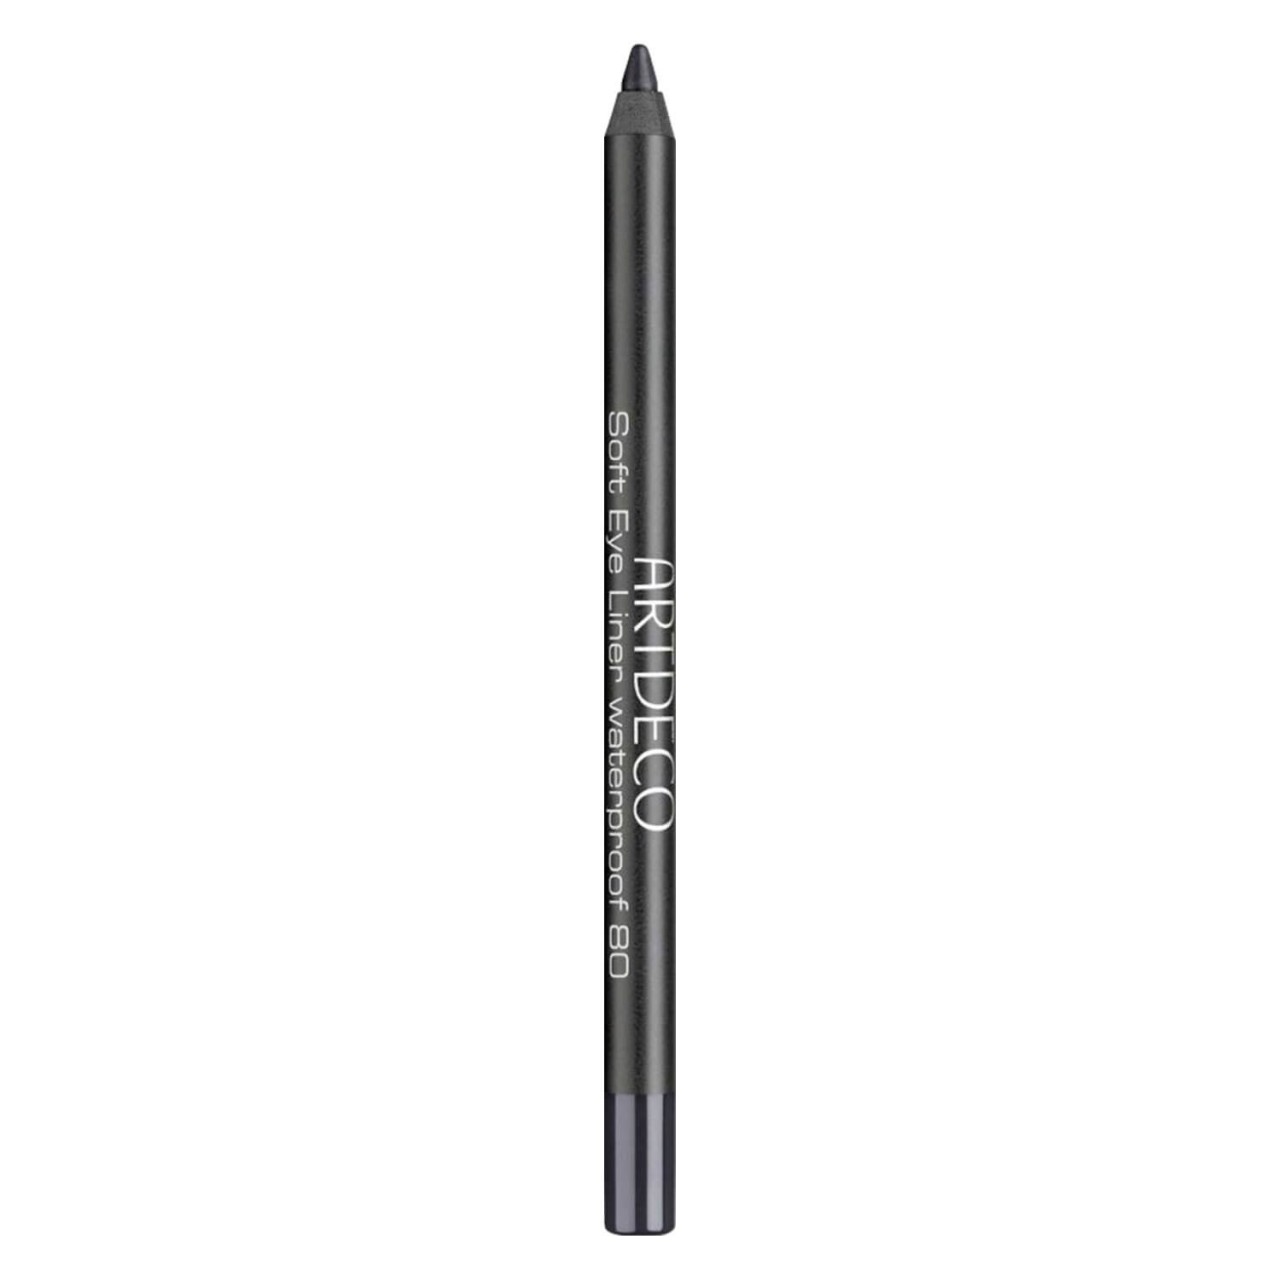 Soft Eyeliner - Waterproof Sparkling Black 80 von Artdeco